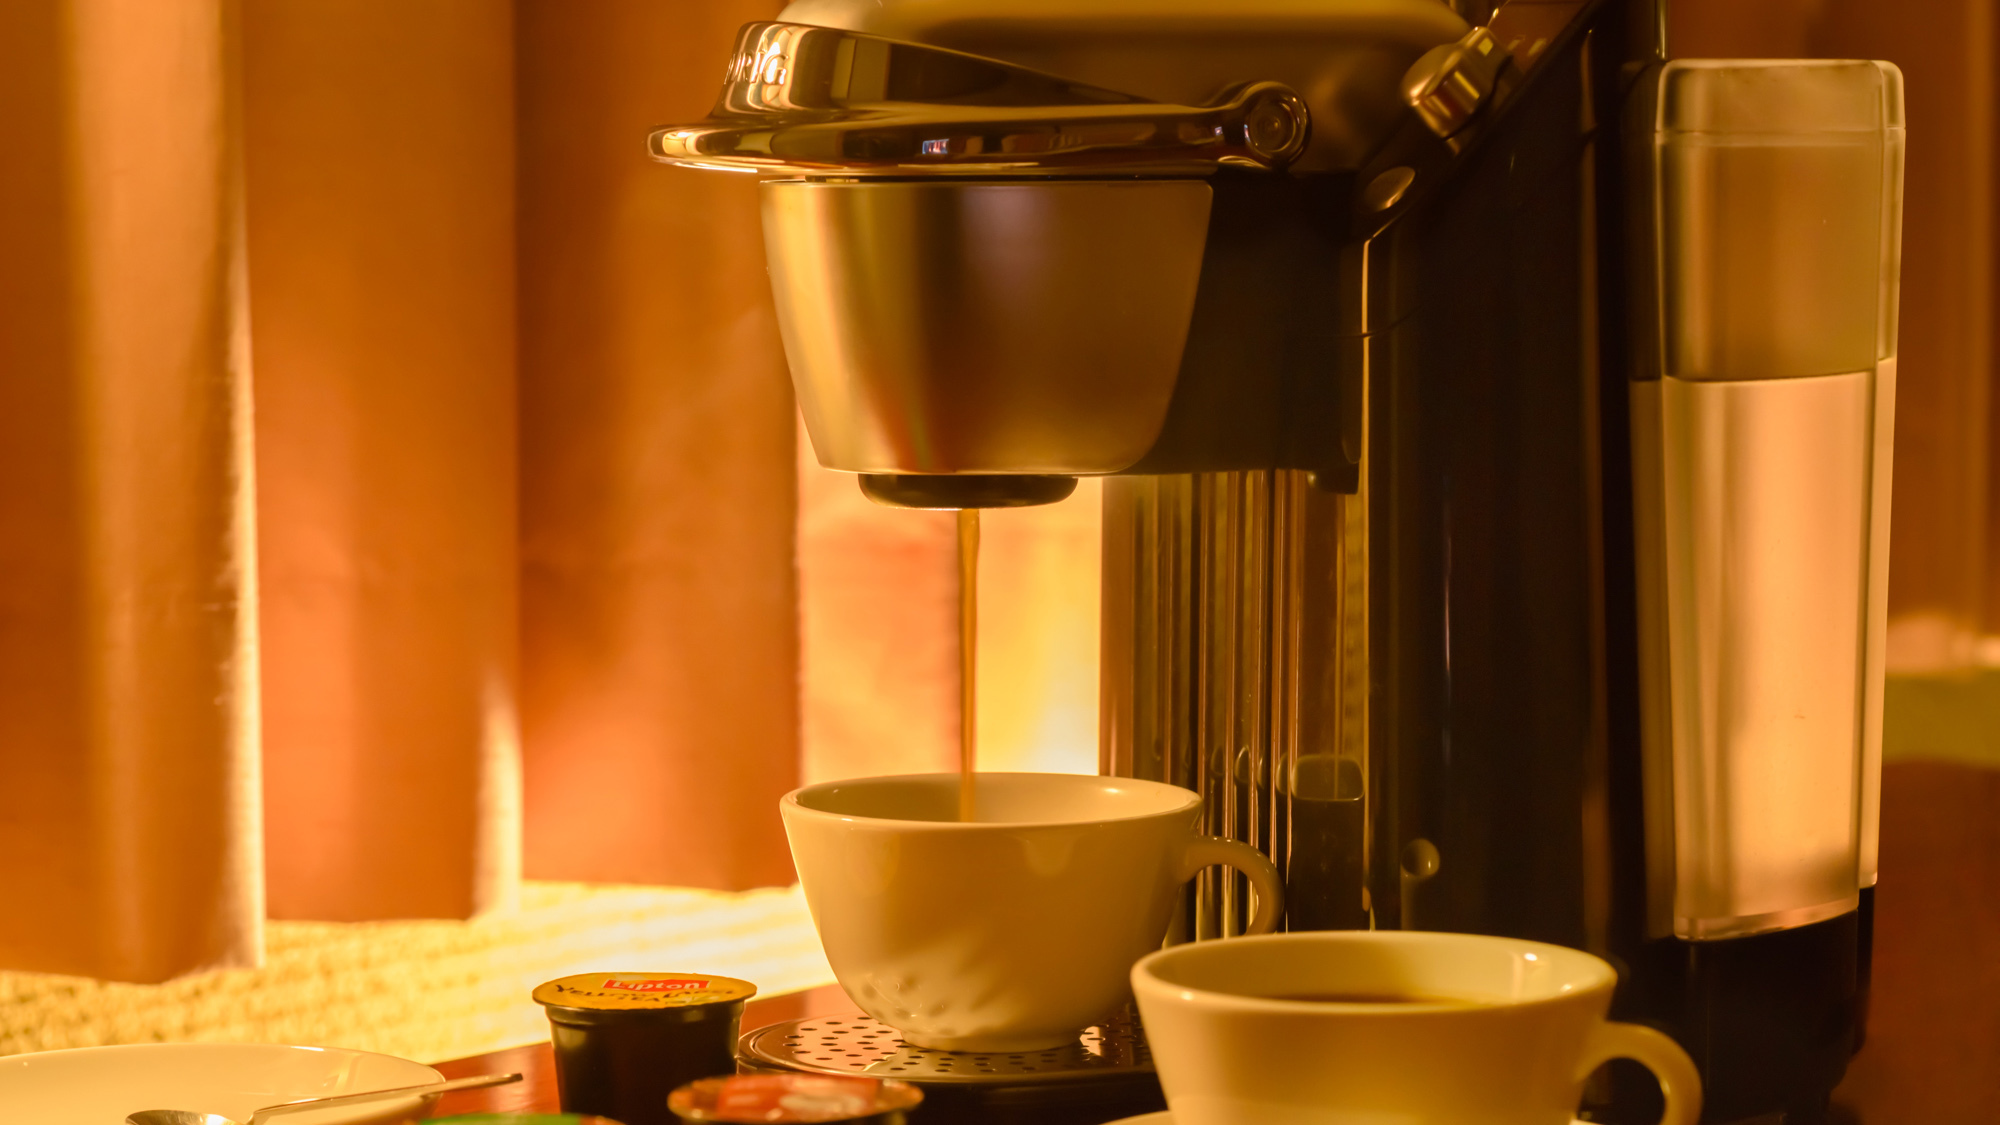 ・【コーヒーメーカー】温かいお飲み物でほっと一息、癒しの時間です